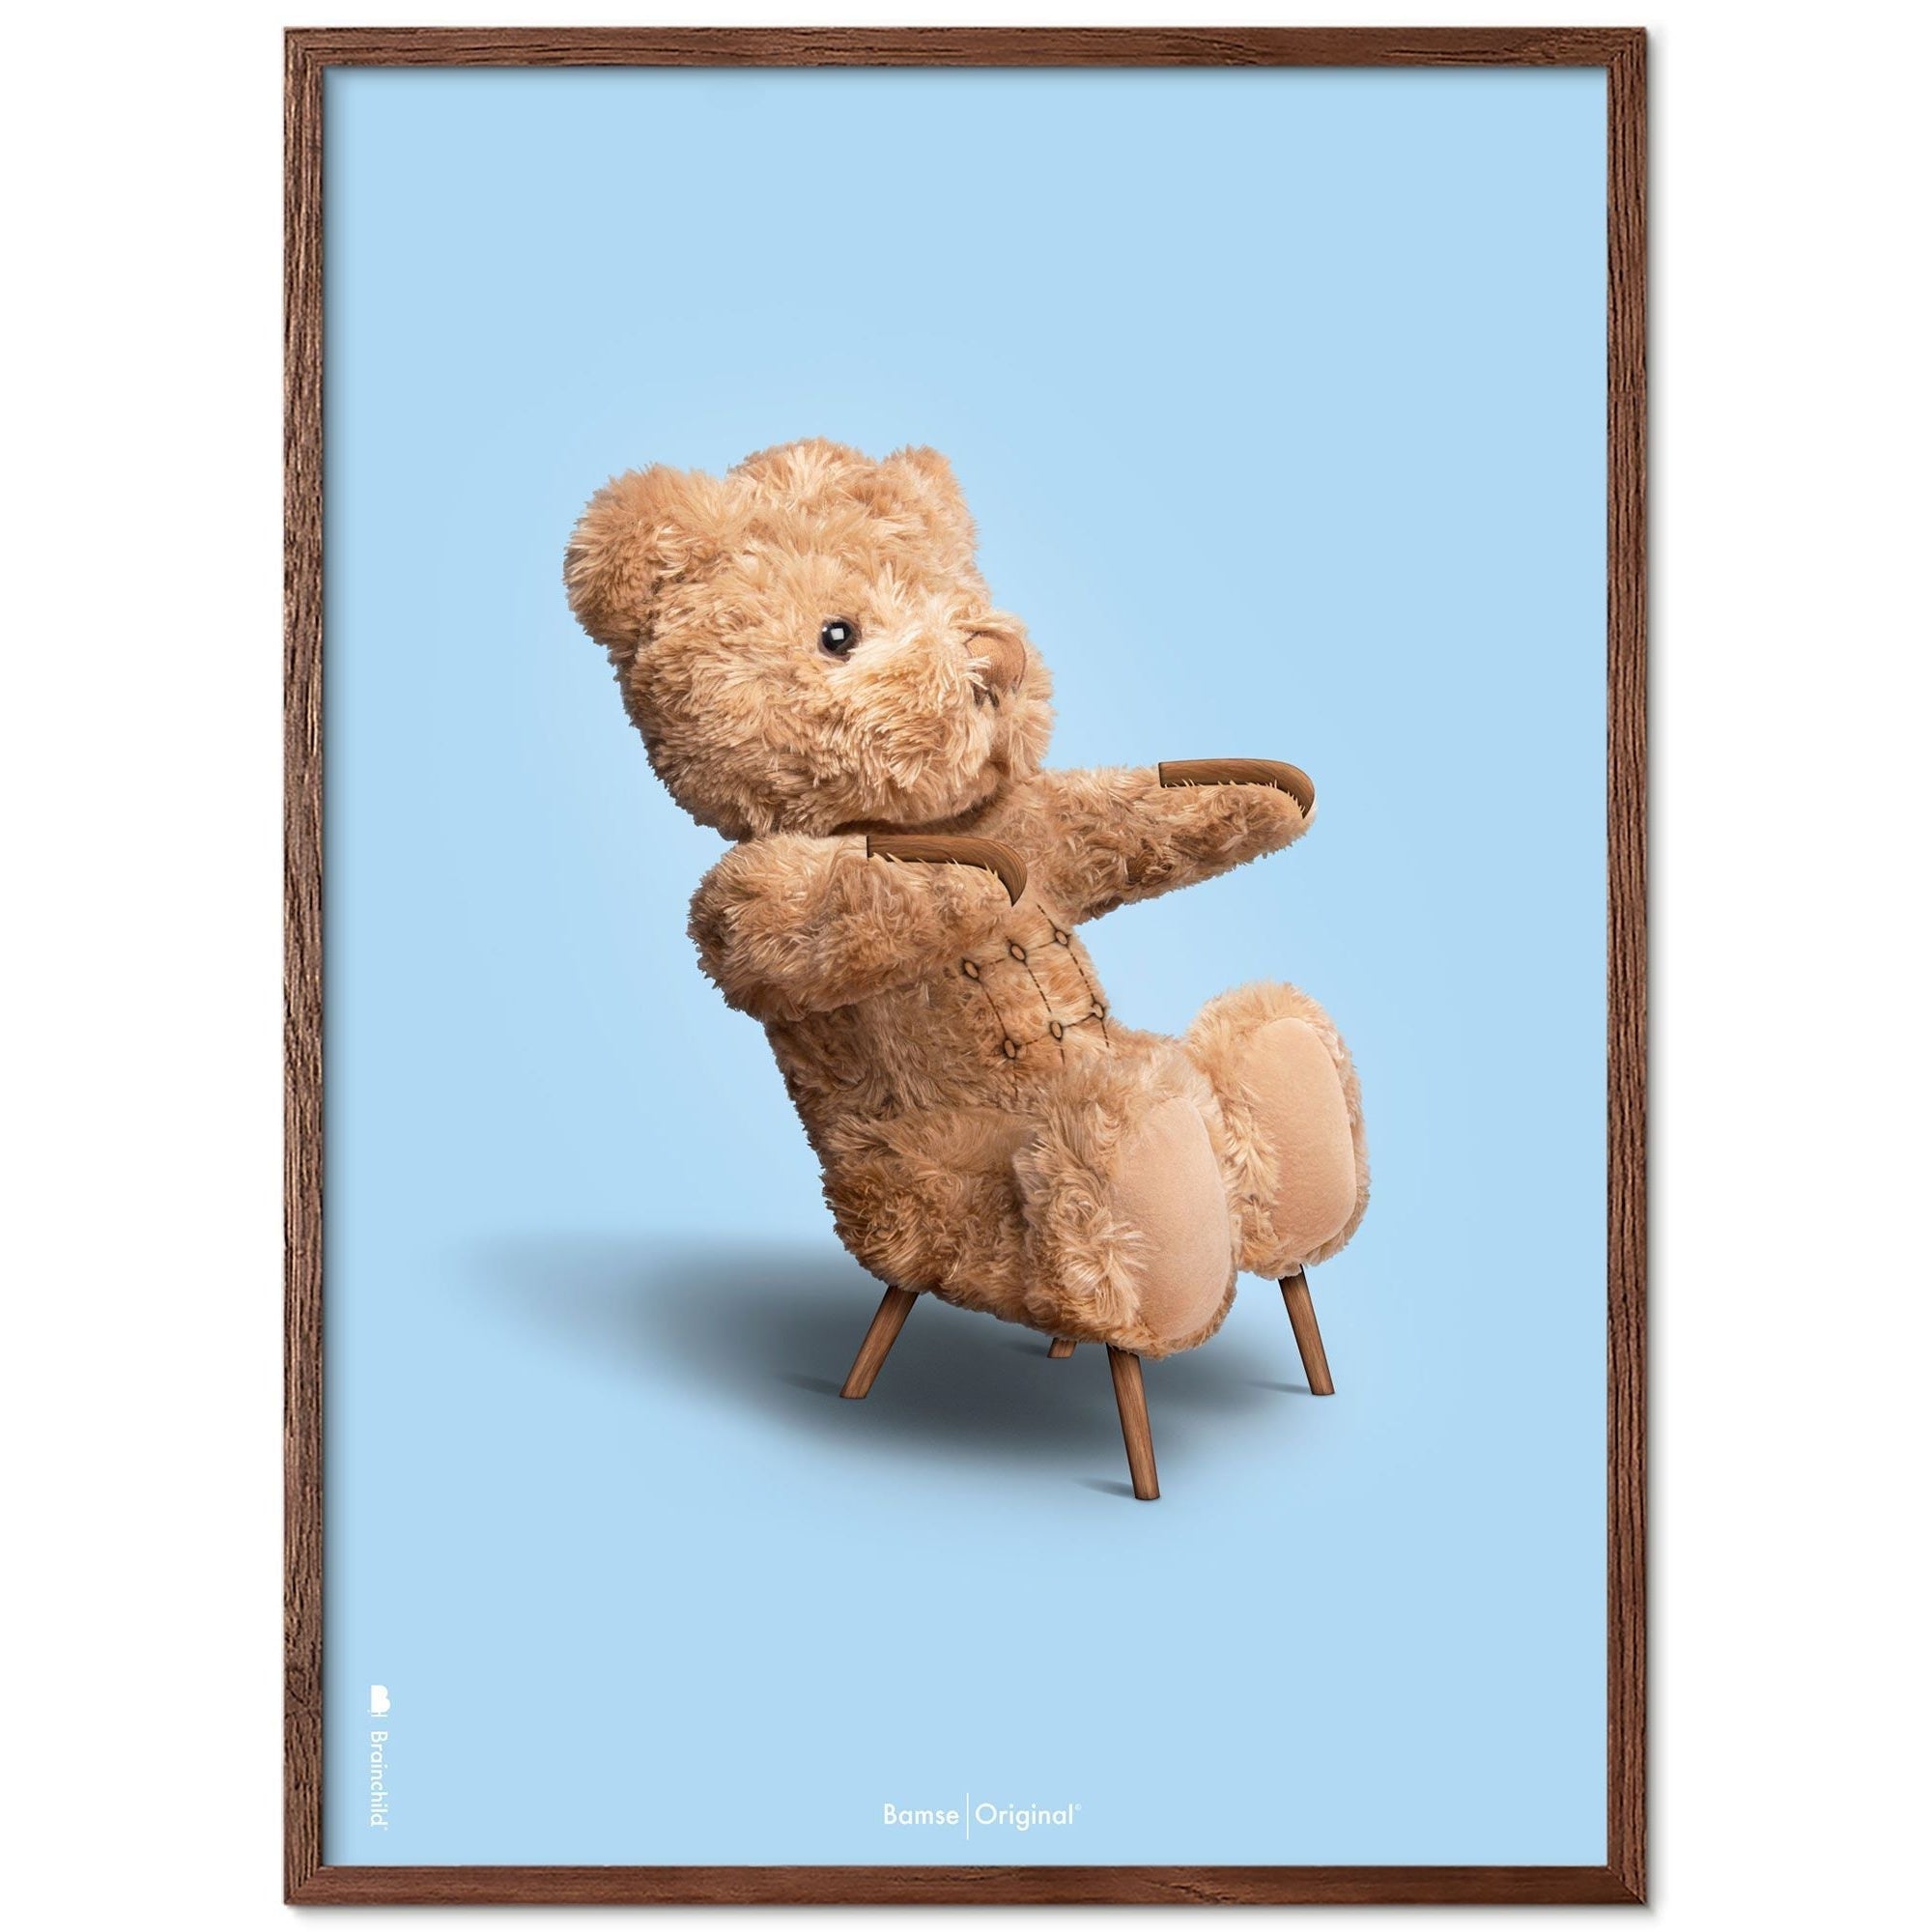 Brainchild Teddybär Classic Posterrahmen aus dunklem Holz Ram 70x100 Cm, hellblauer Hintergrund